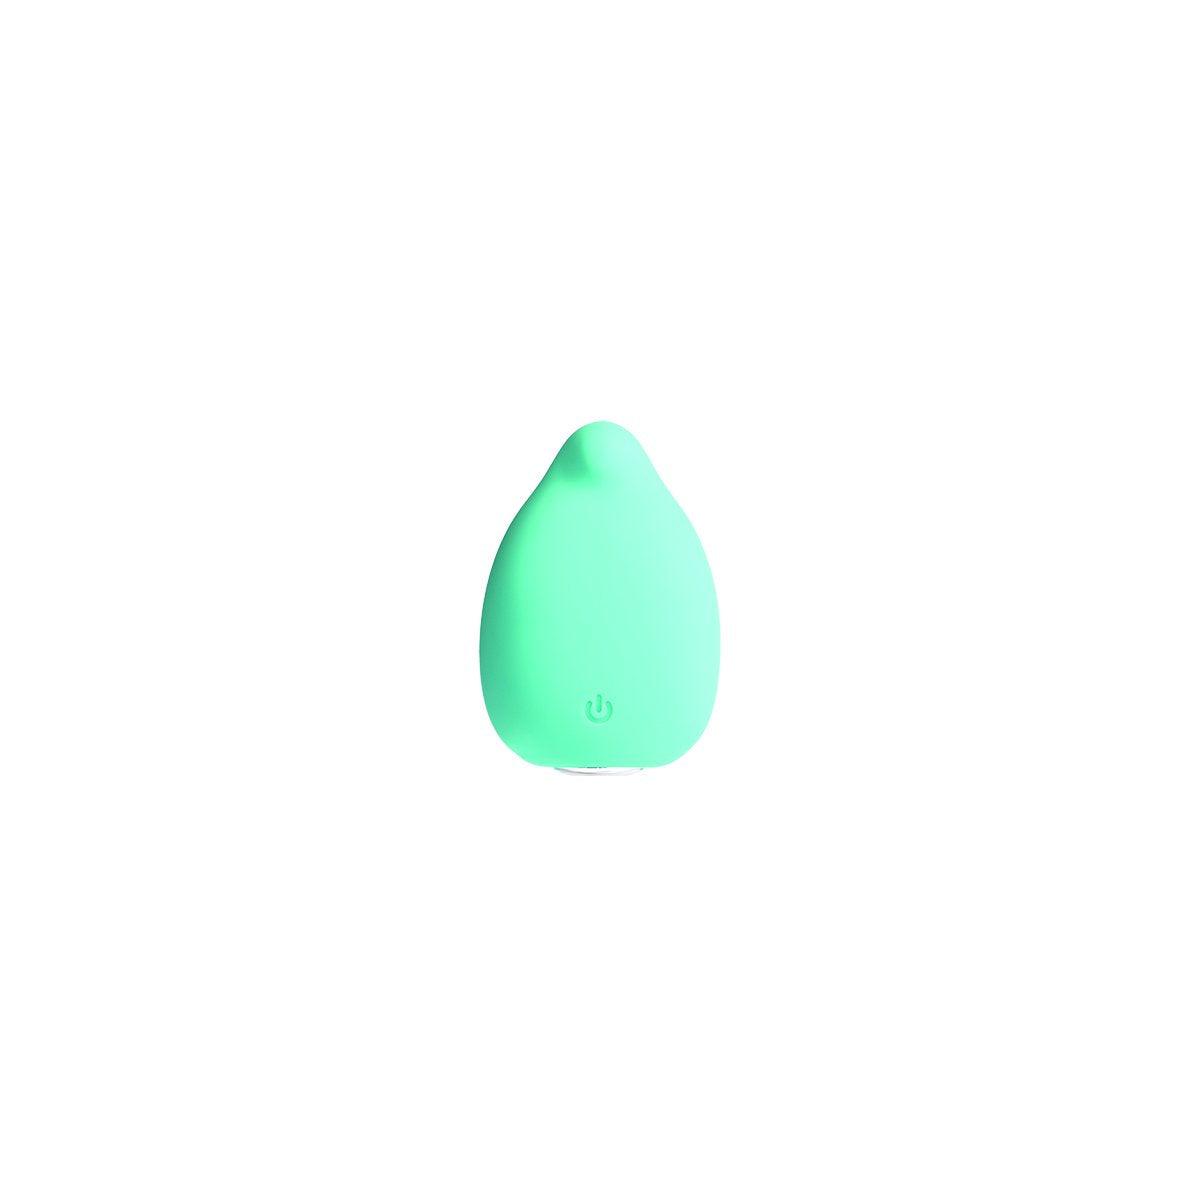 Aquamarine VeDO Yumi Finger Vibe - Turquoise